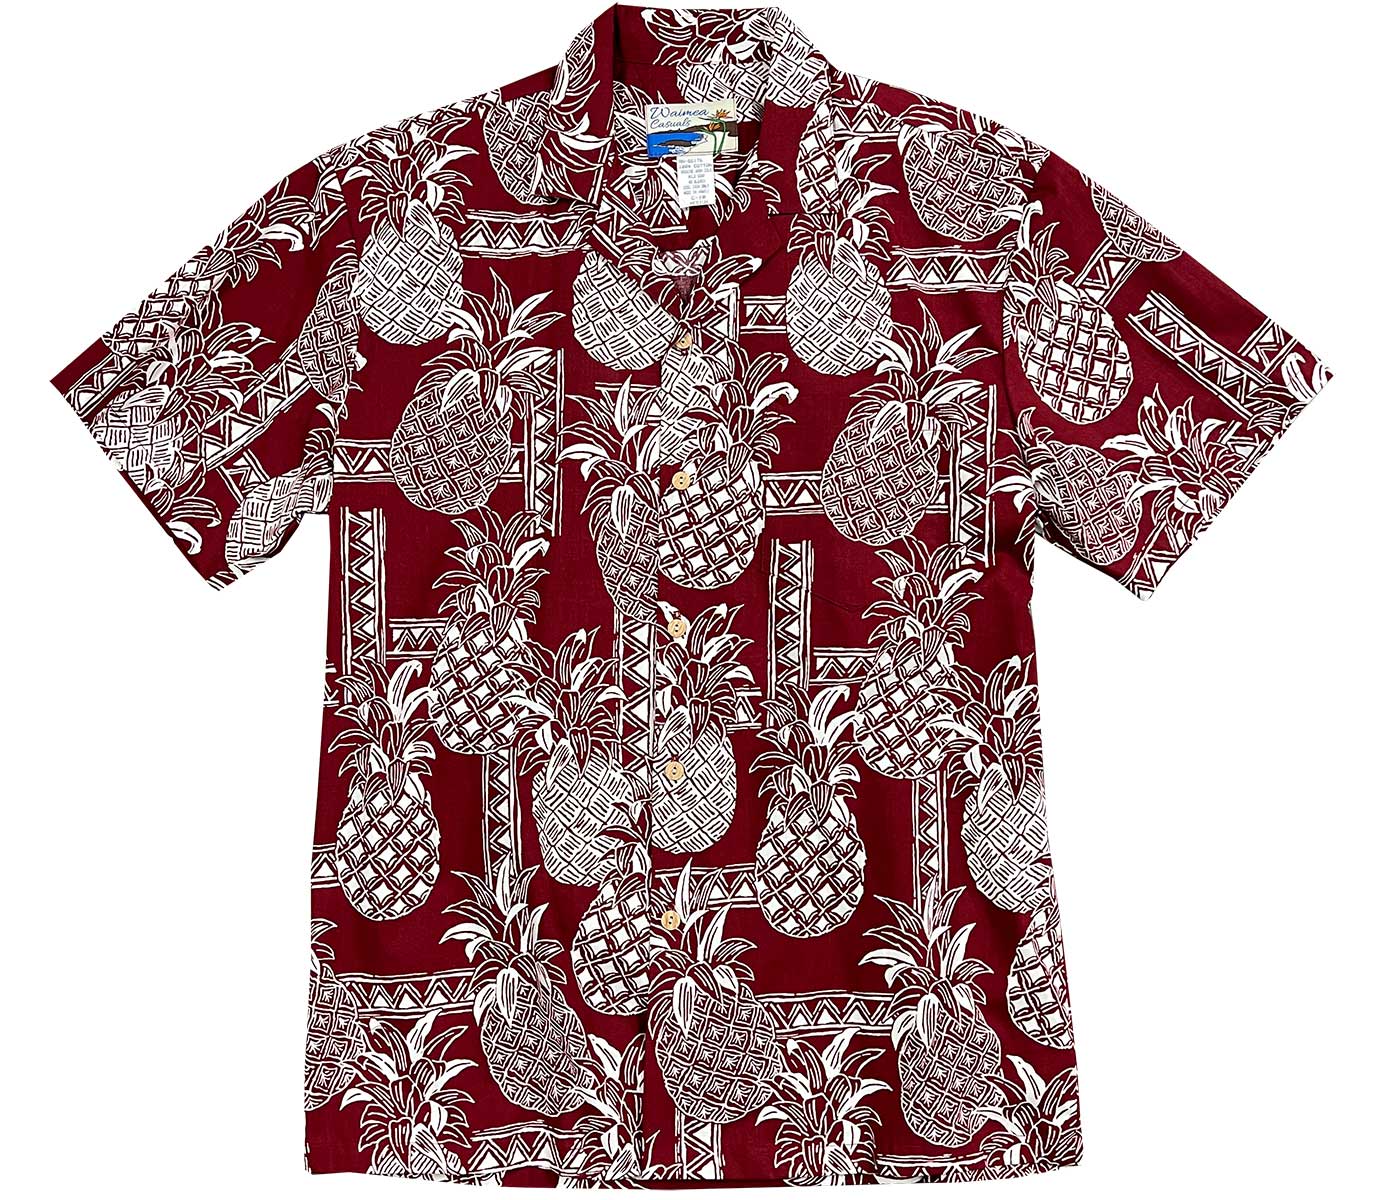 Waimea Casuals Party Time Pineapple Red Hawaiian Shirt | AlohaFunWear.com